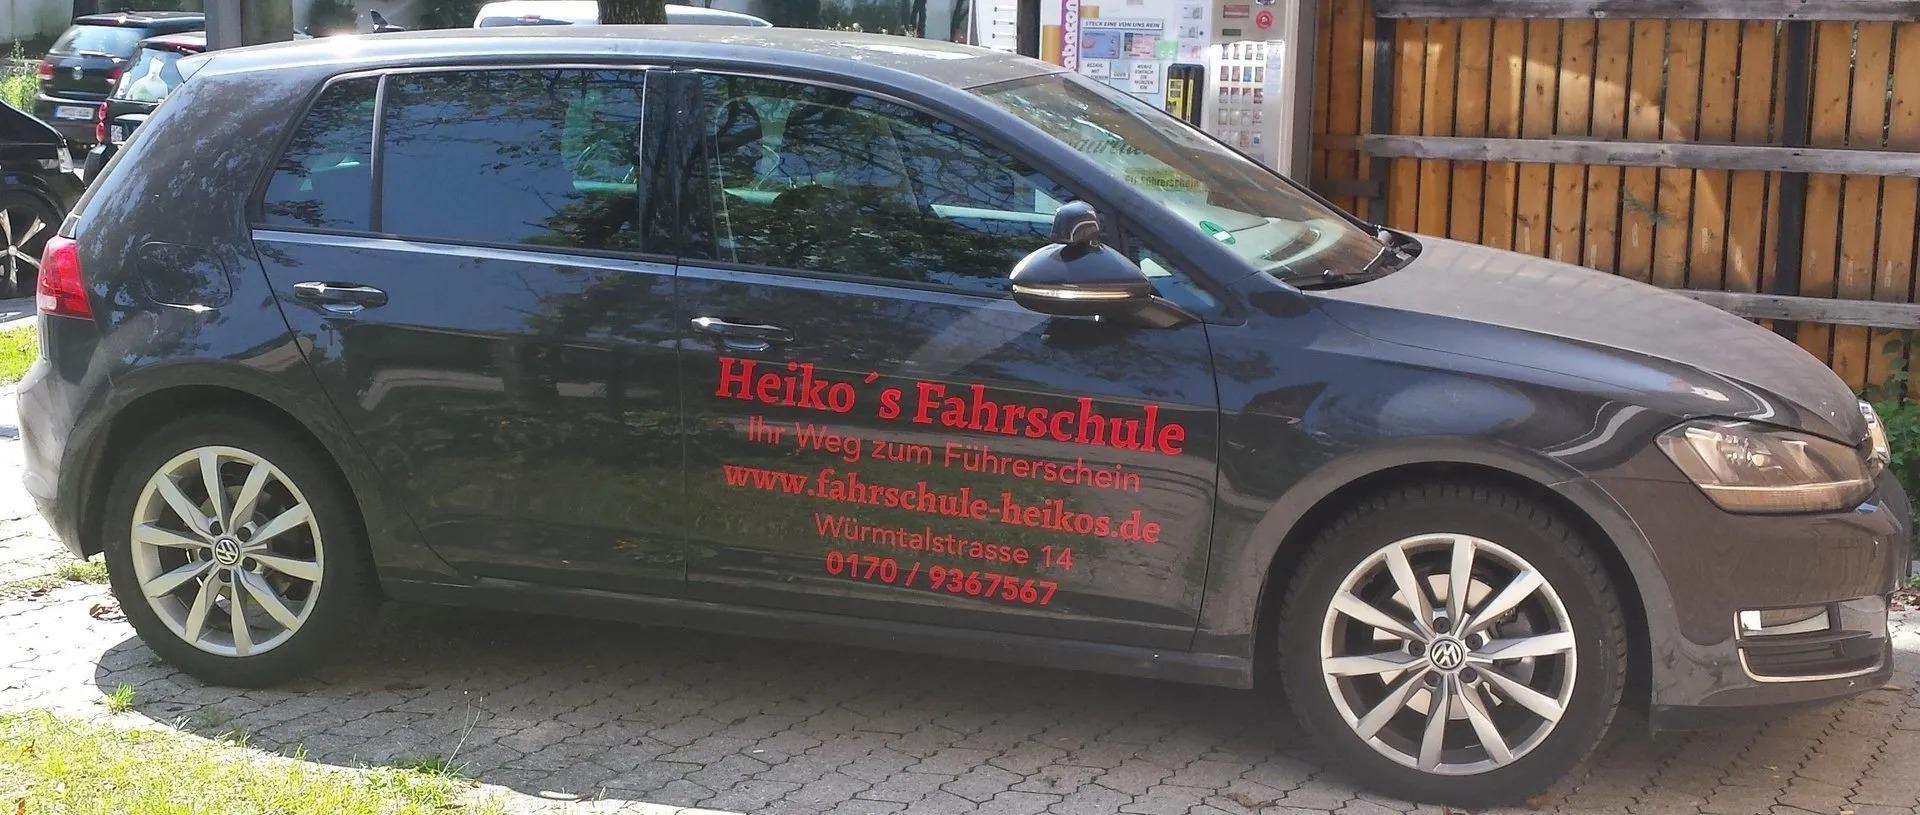 Bilder Heiko's Fahrschule | Fahrtraining Führerschein Auto | Perlach München